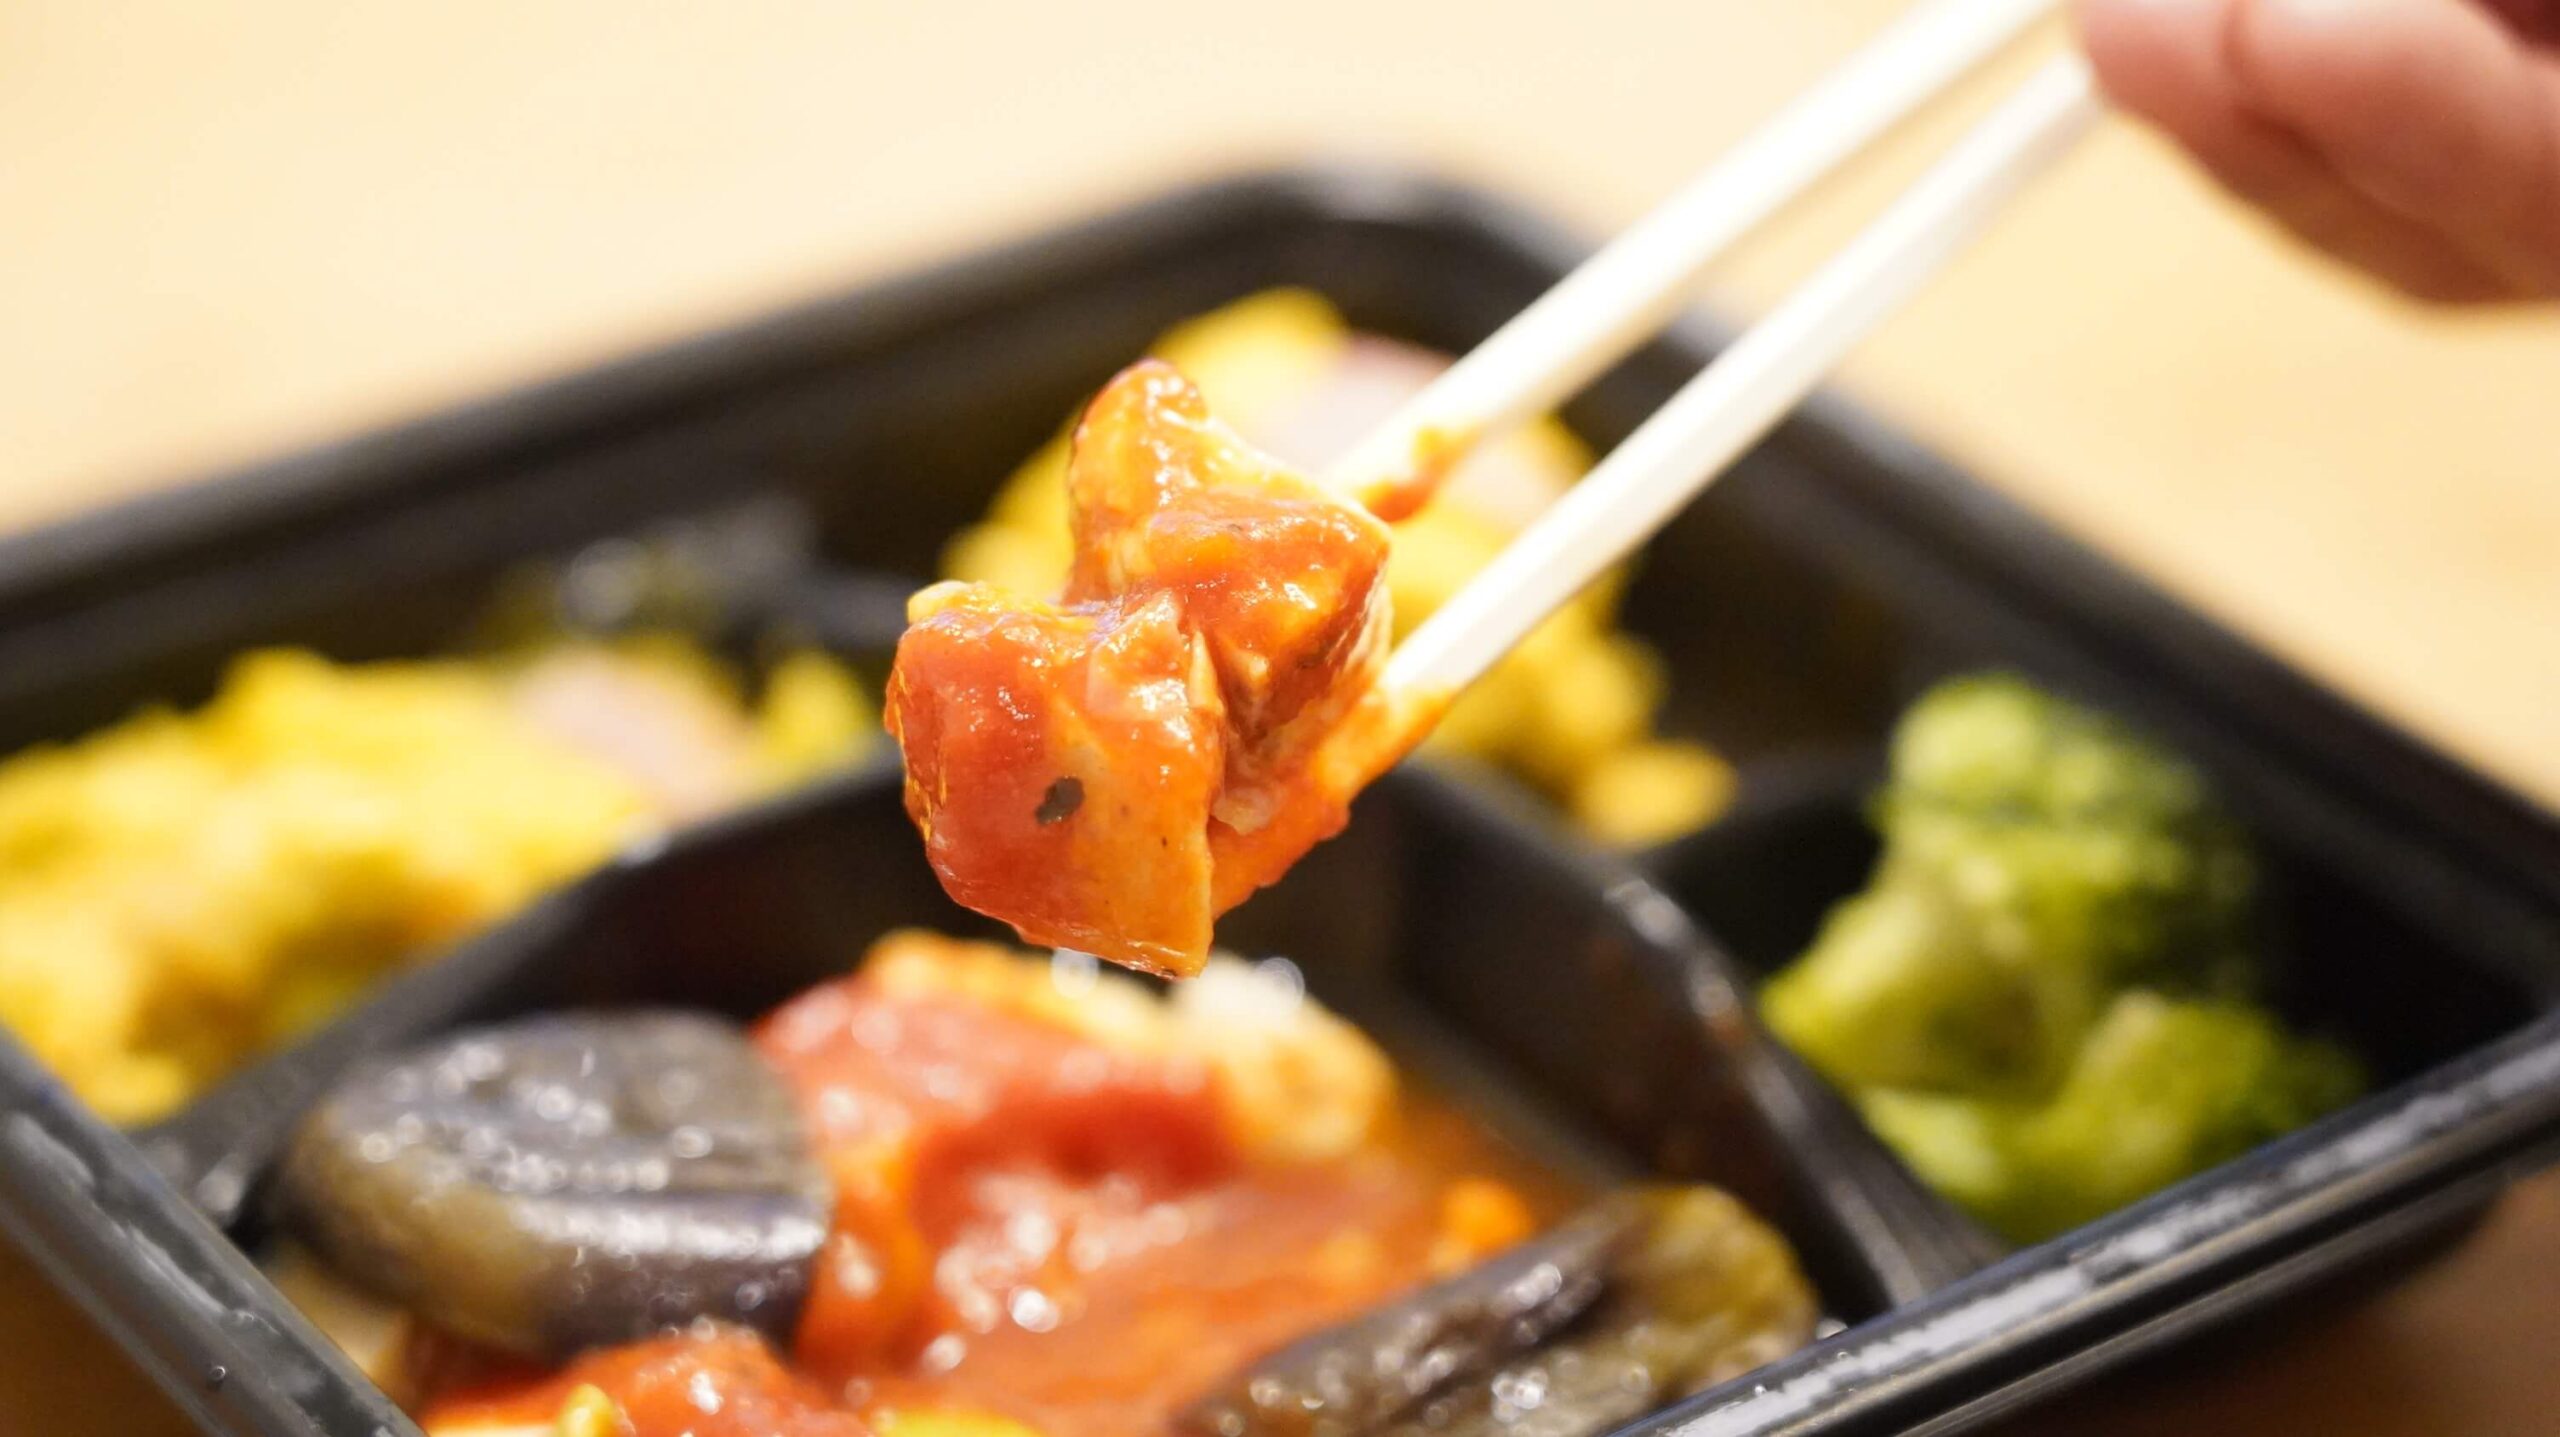 ライザップのサポートミール「チキンのトマトソースがけ」を箸でつまんでいる写真